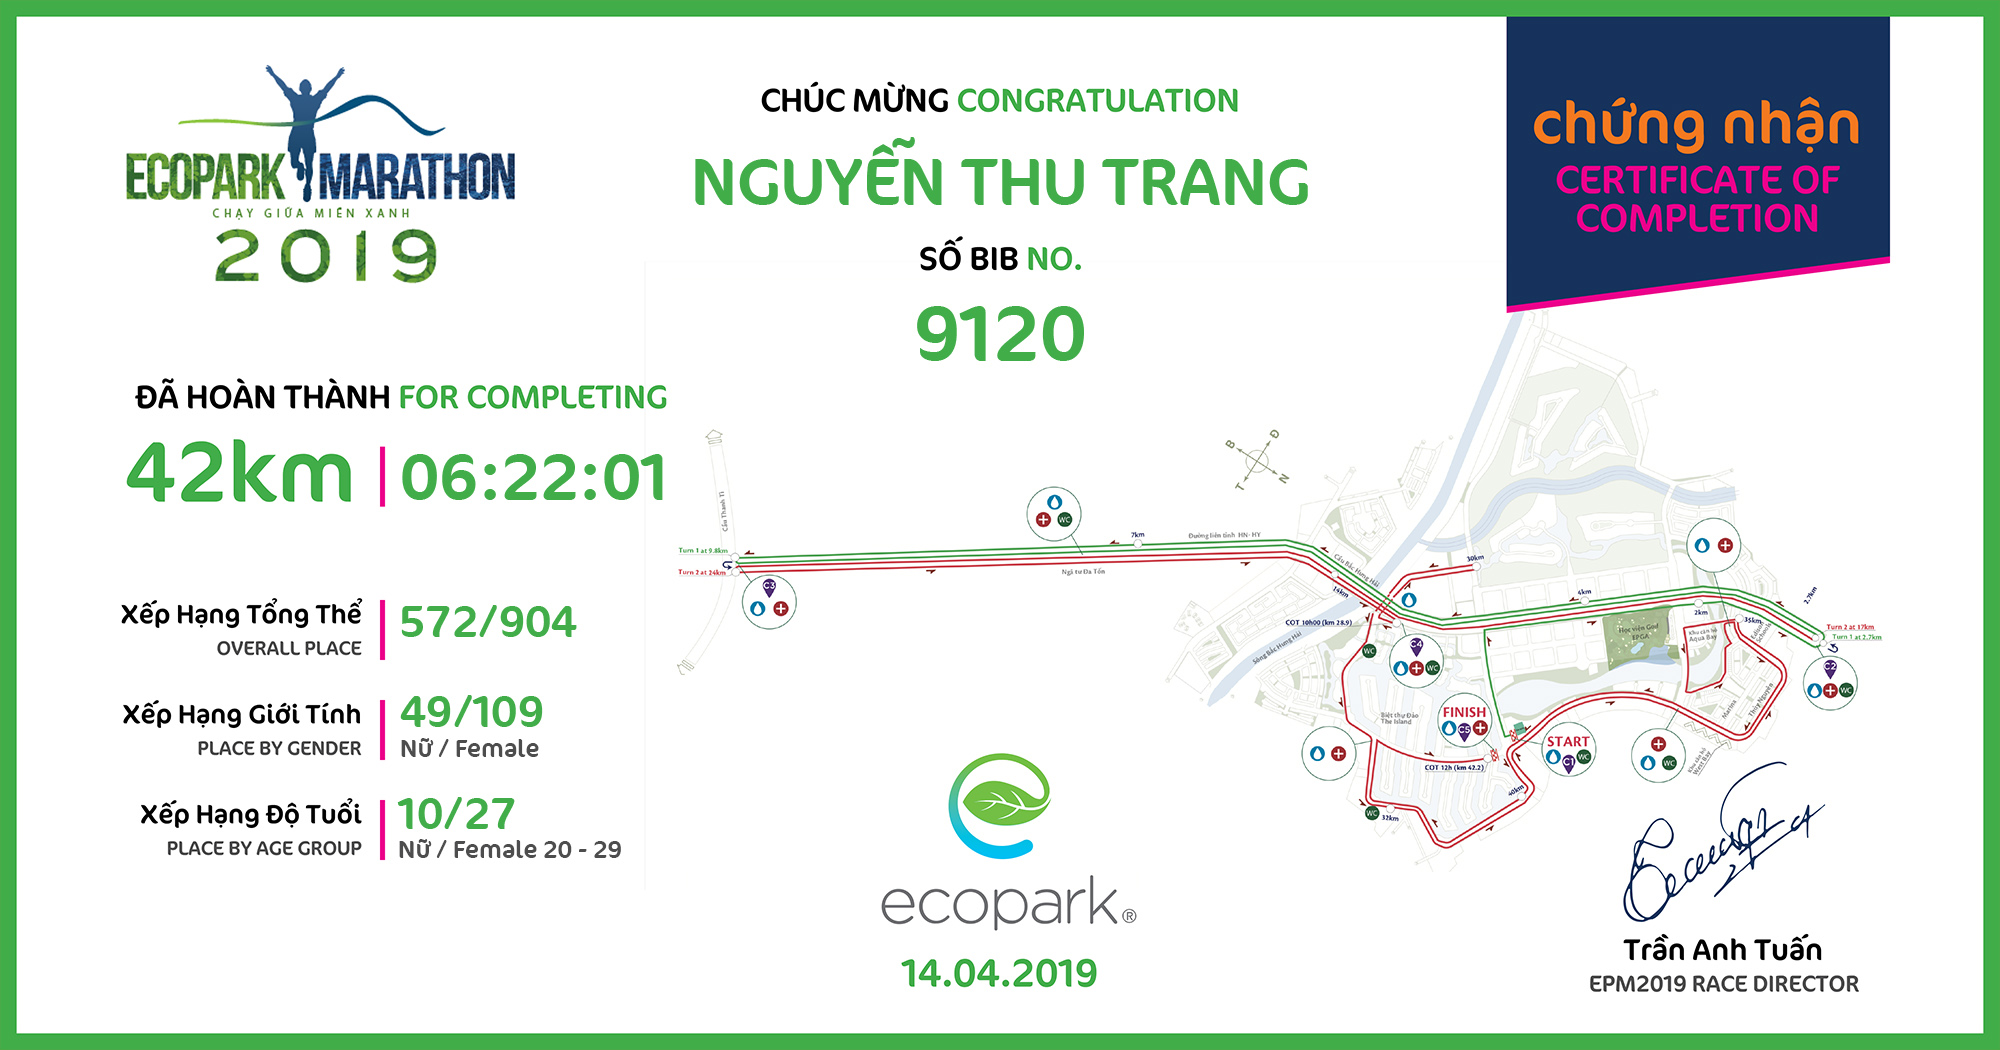 9120 - Nguyễn Thu Trang